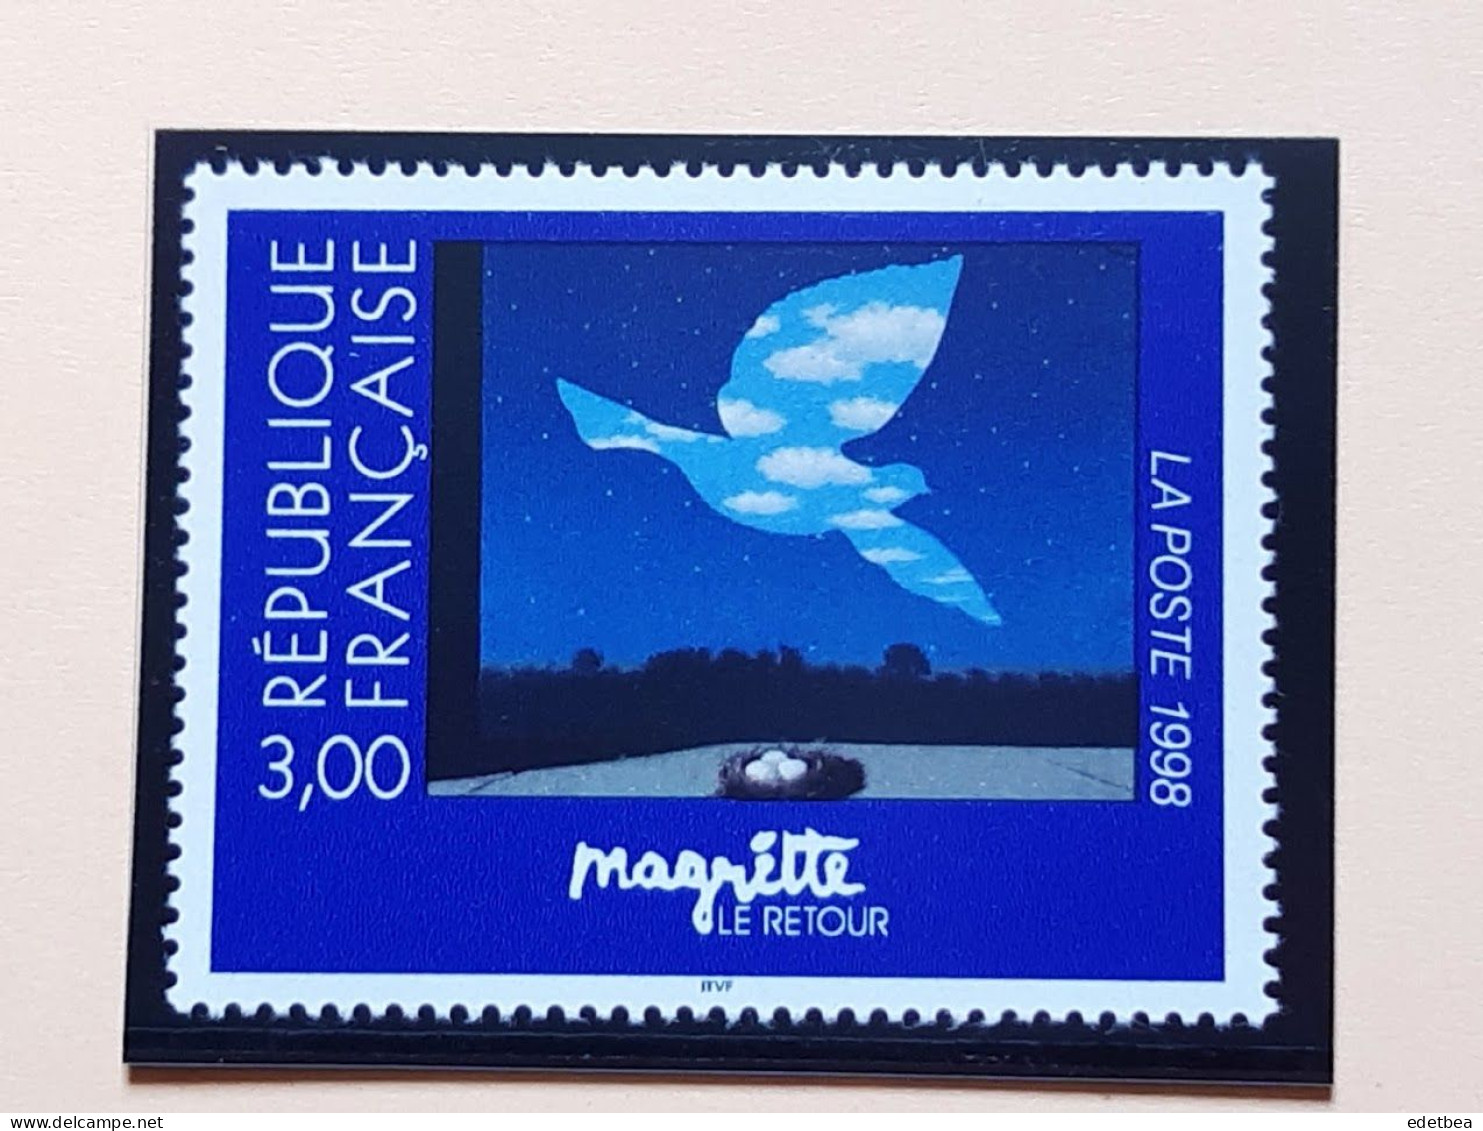 Timbre – France – 1998-n° 3145- Oeuvre De René MAGRITTE : Le Retour -Etat : Neuf - Unused Stamps